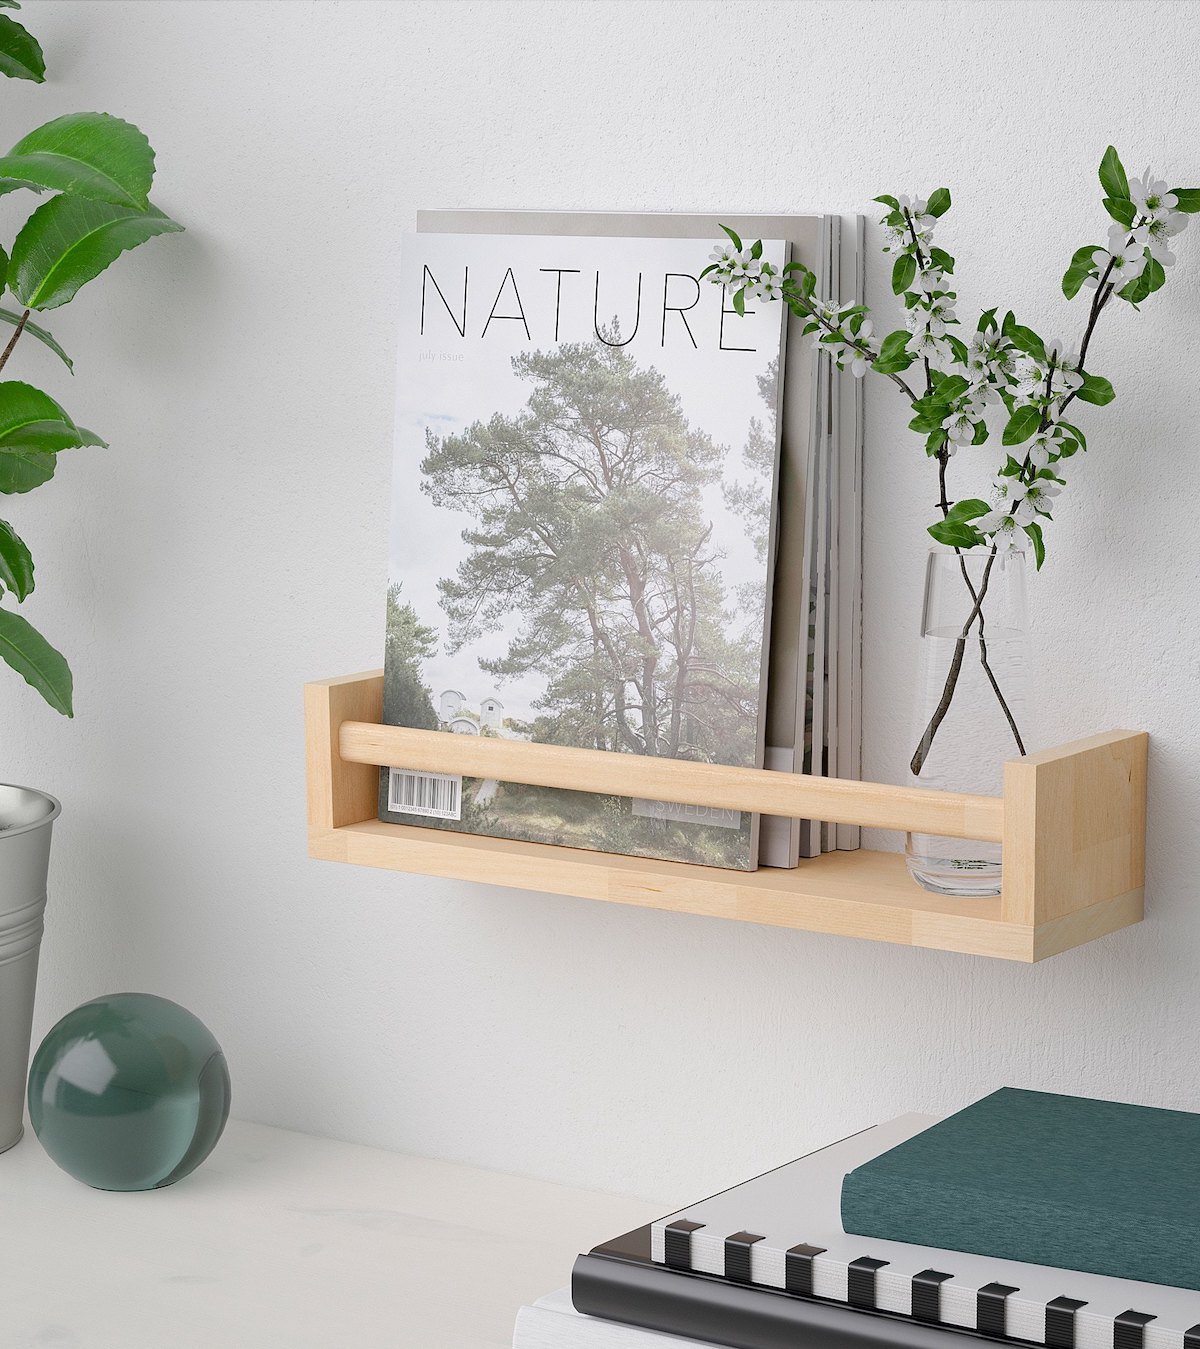 Ikea bekvam hack bois bureau chambre végétale plante verte bille livre cahier